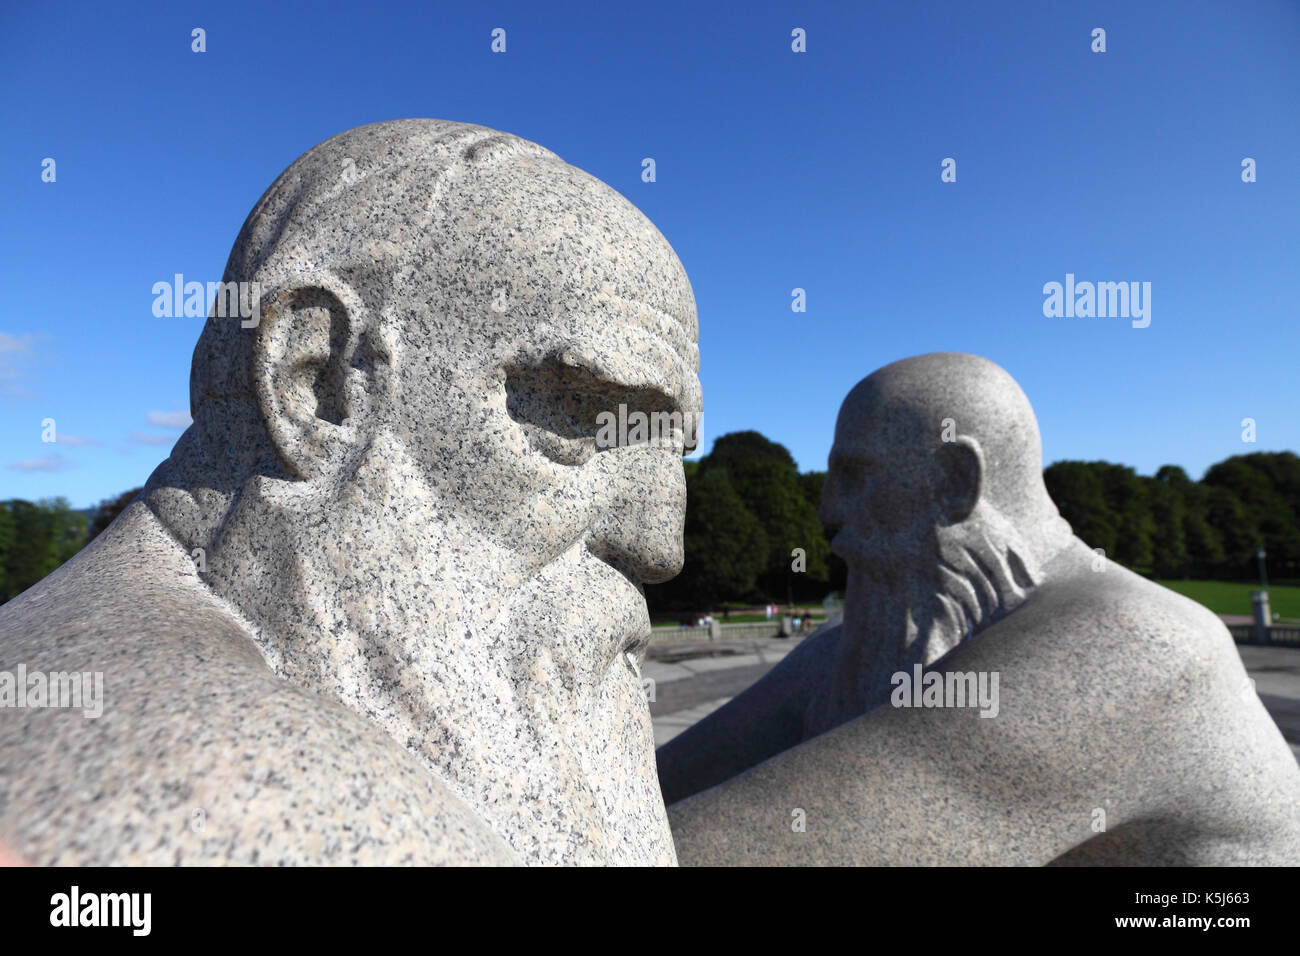 Sculptures de granit de 2 barbus en face de l'autre Parc Vigeland, Oslo, Norvège Banque D'Images